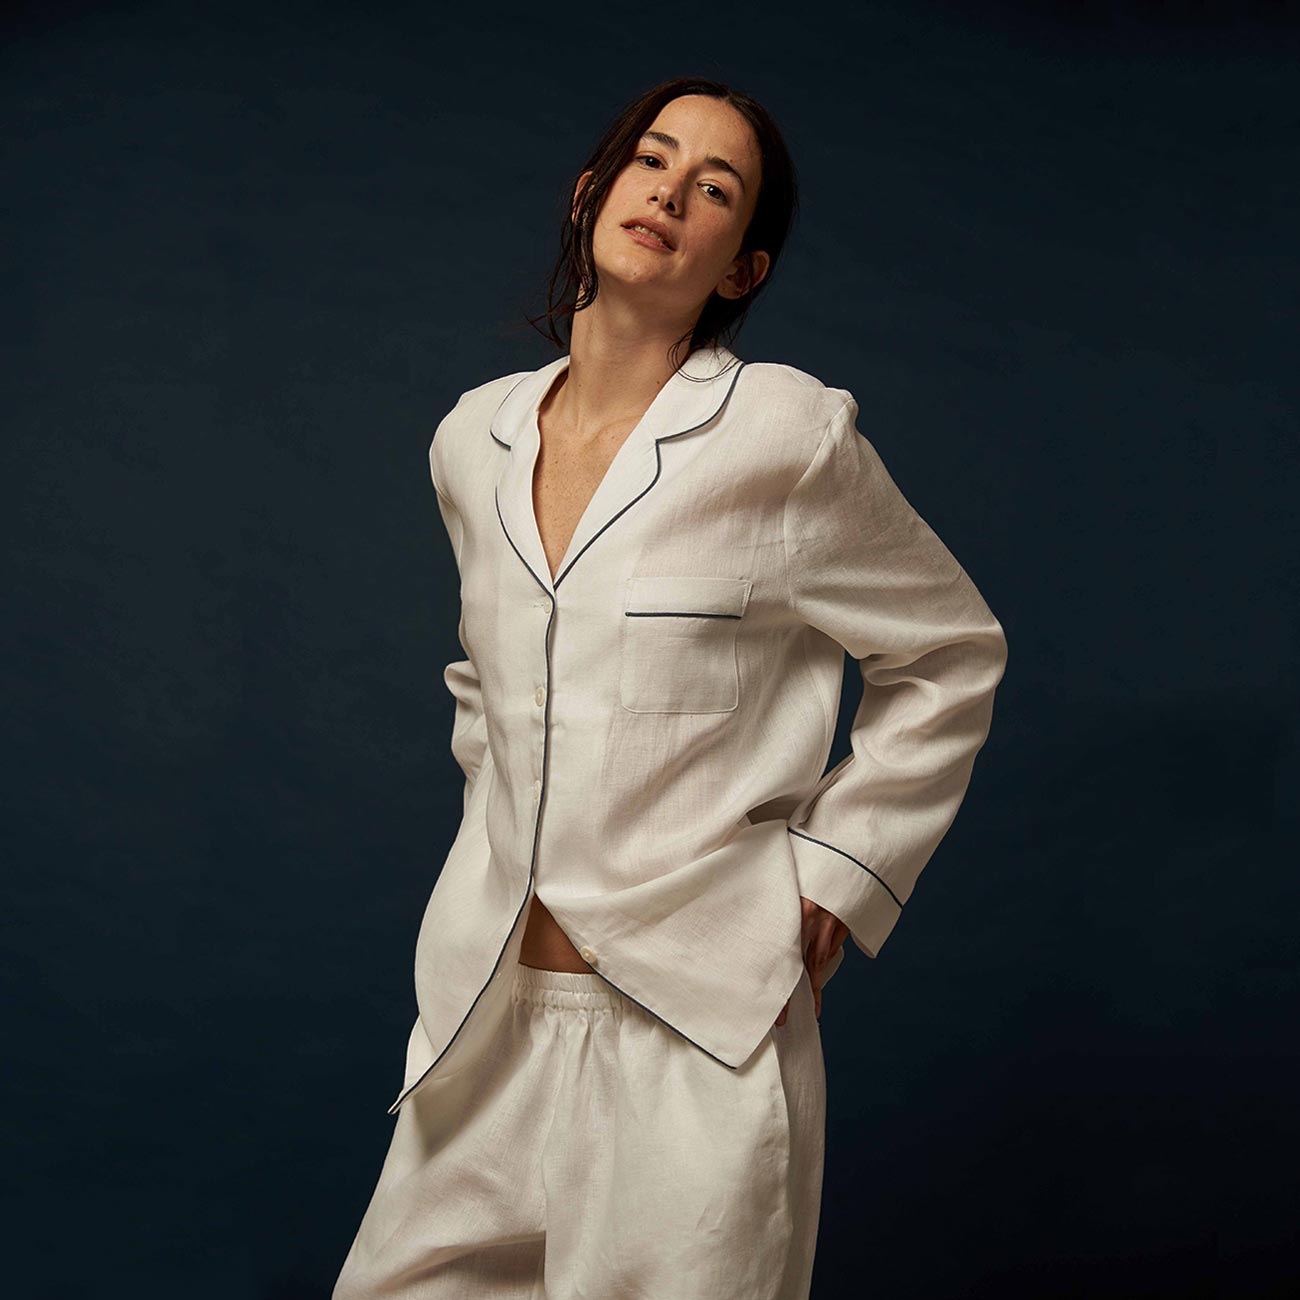 Women's White Linen Pyjama Trouser Set